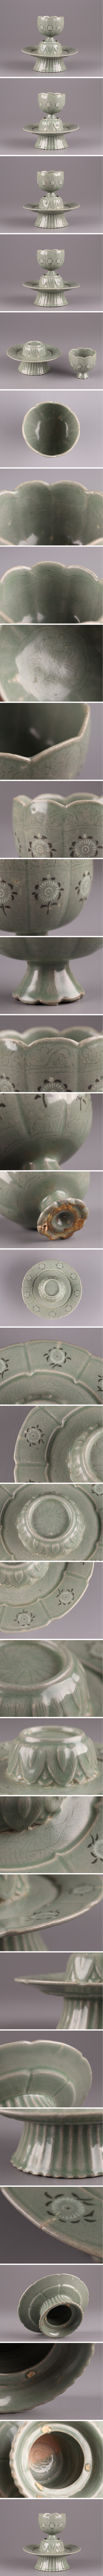 直売早割古美術 朝鮮古陶磁器 高麗青磁 白黒象嵌 盃 杯台 古作 時代物 極上品 初だし品 3849 高麗